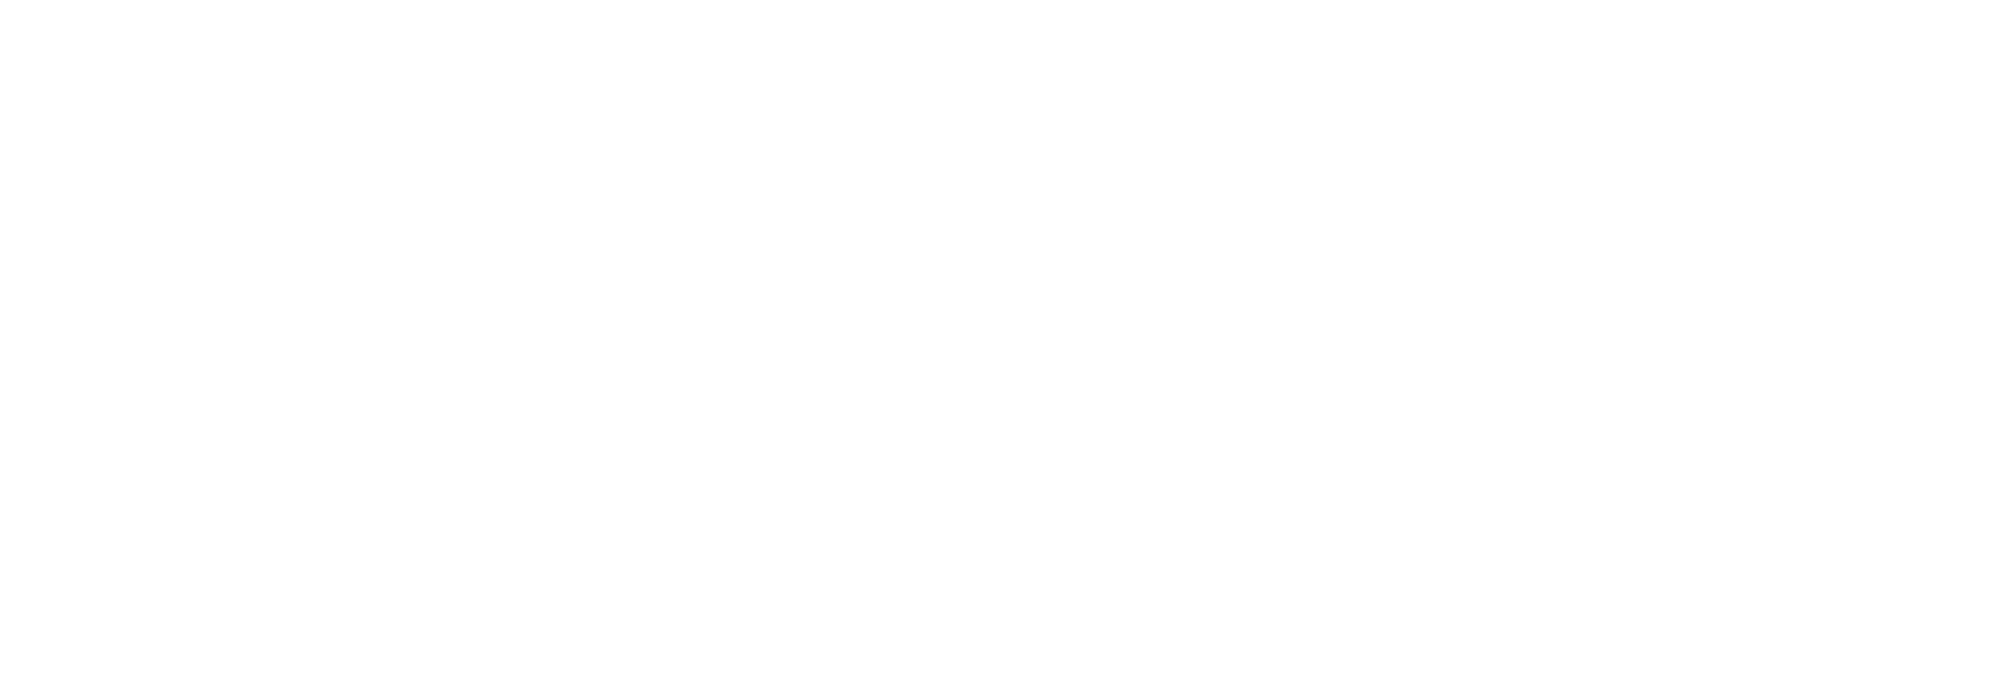 El logotipo oficial de WordPress.